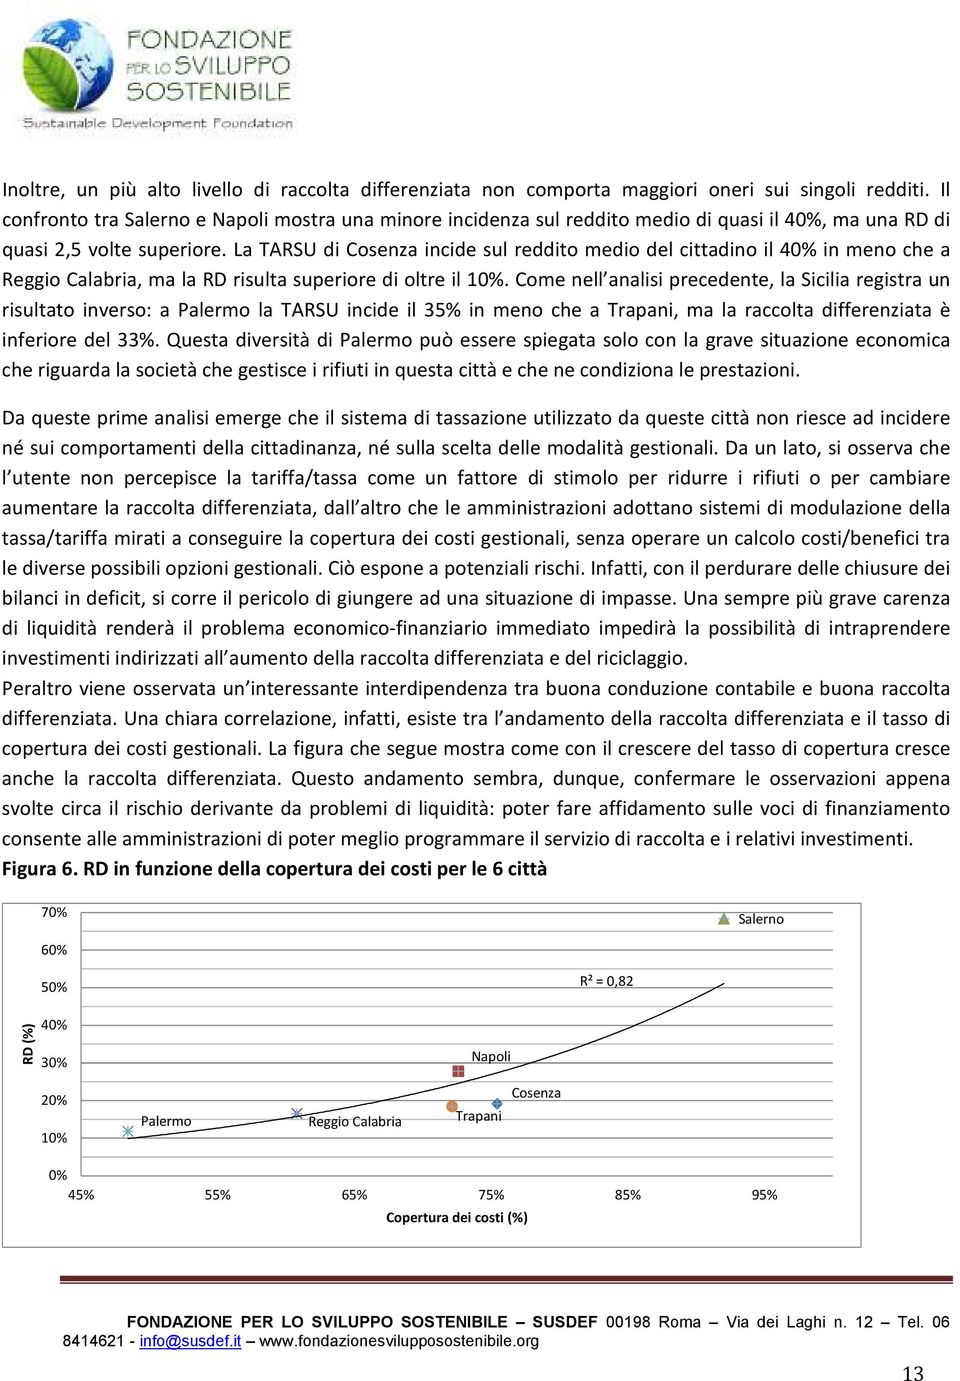 La di Cosenza incide sul reddito medio del cittadino il 40% in meno che a Reggio Calabria, ma la RD risulta superiore di oltre il 10%.